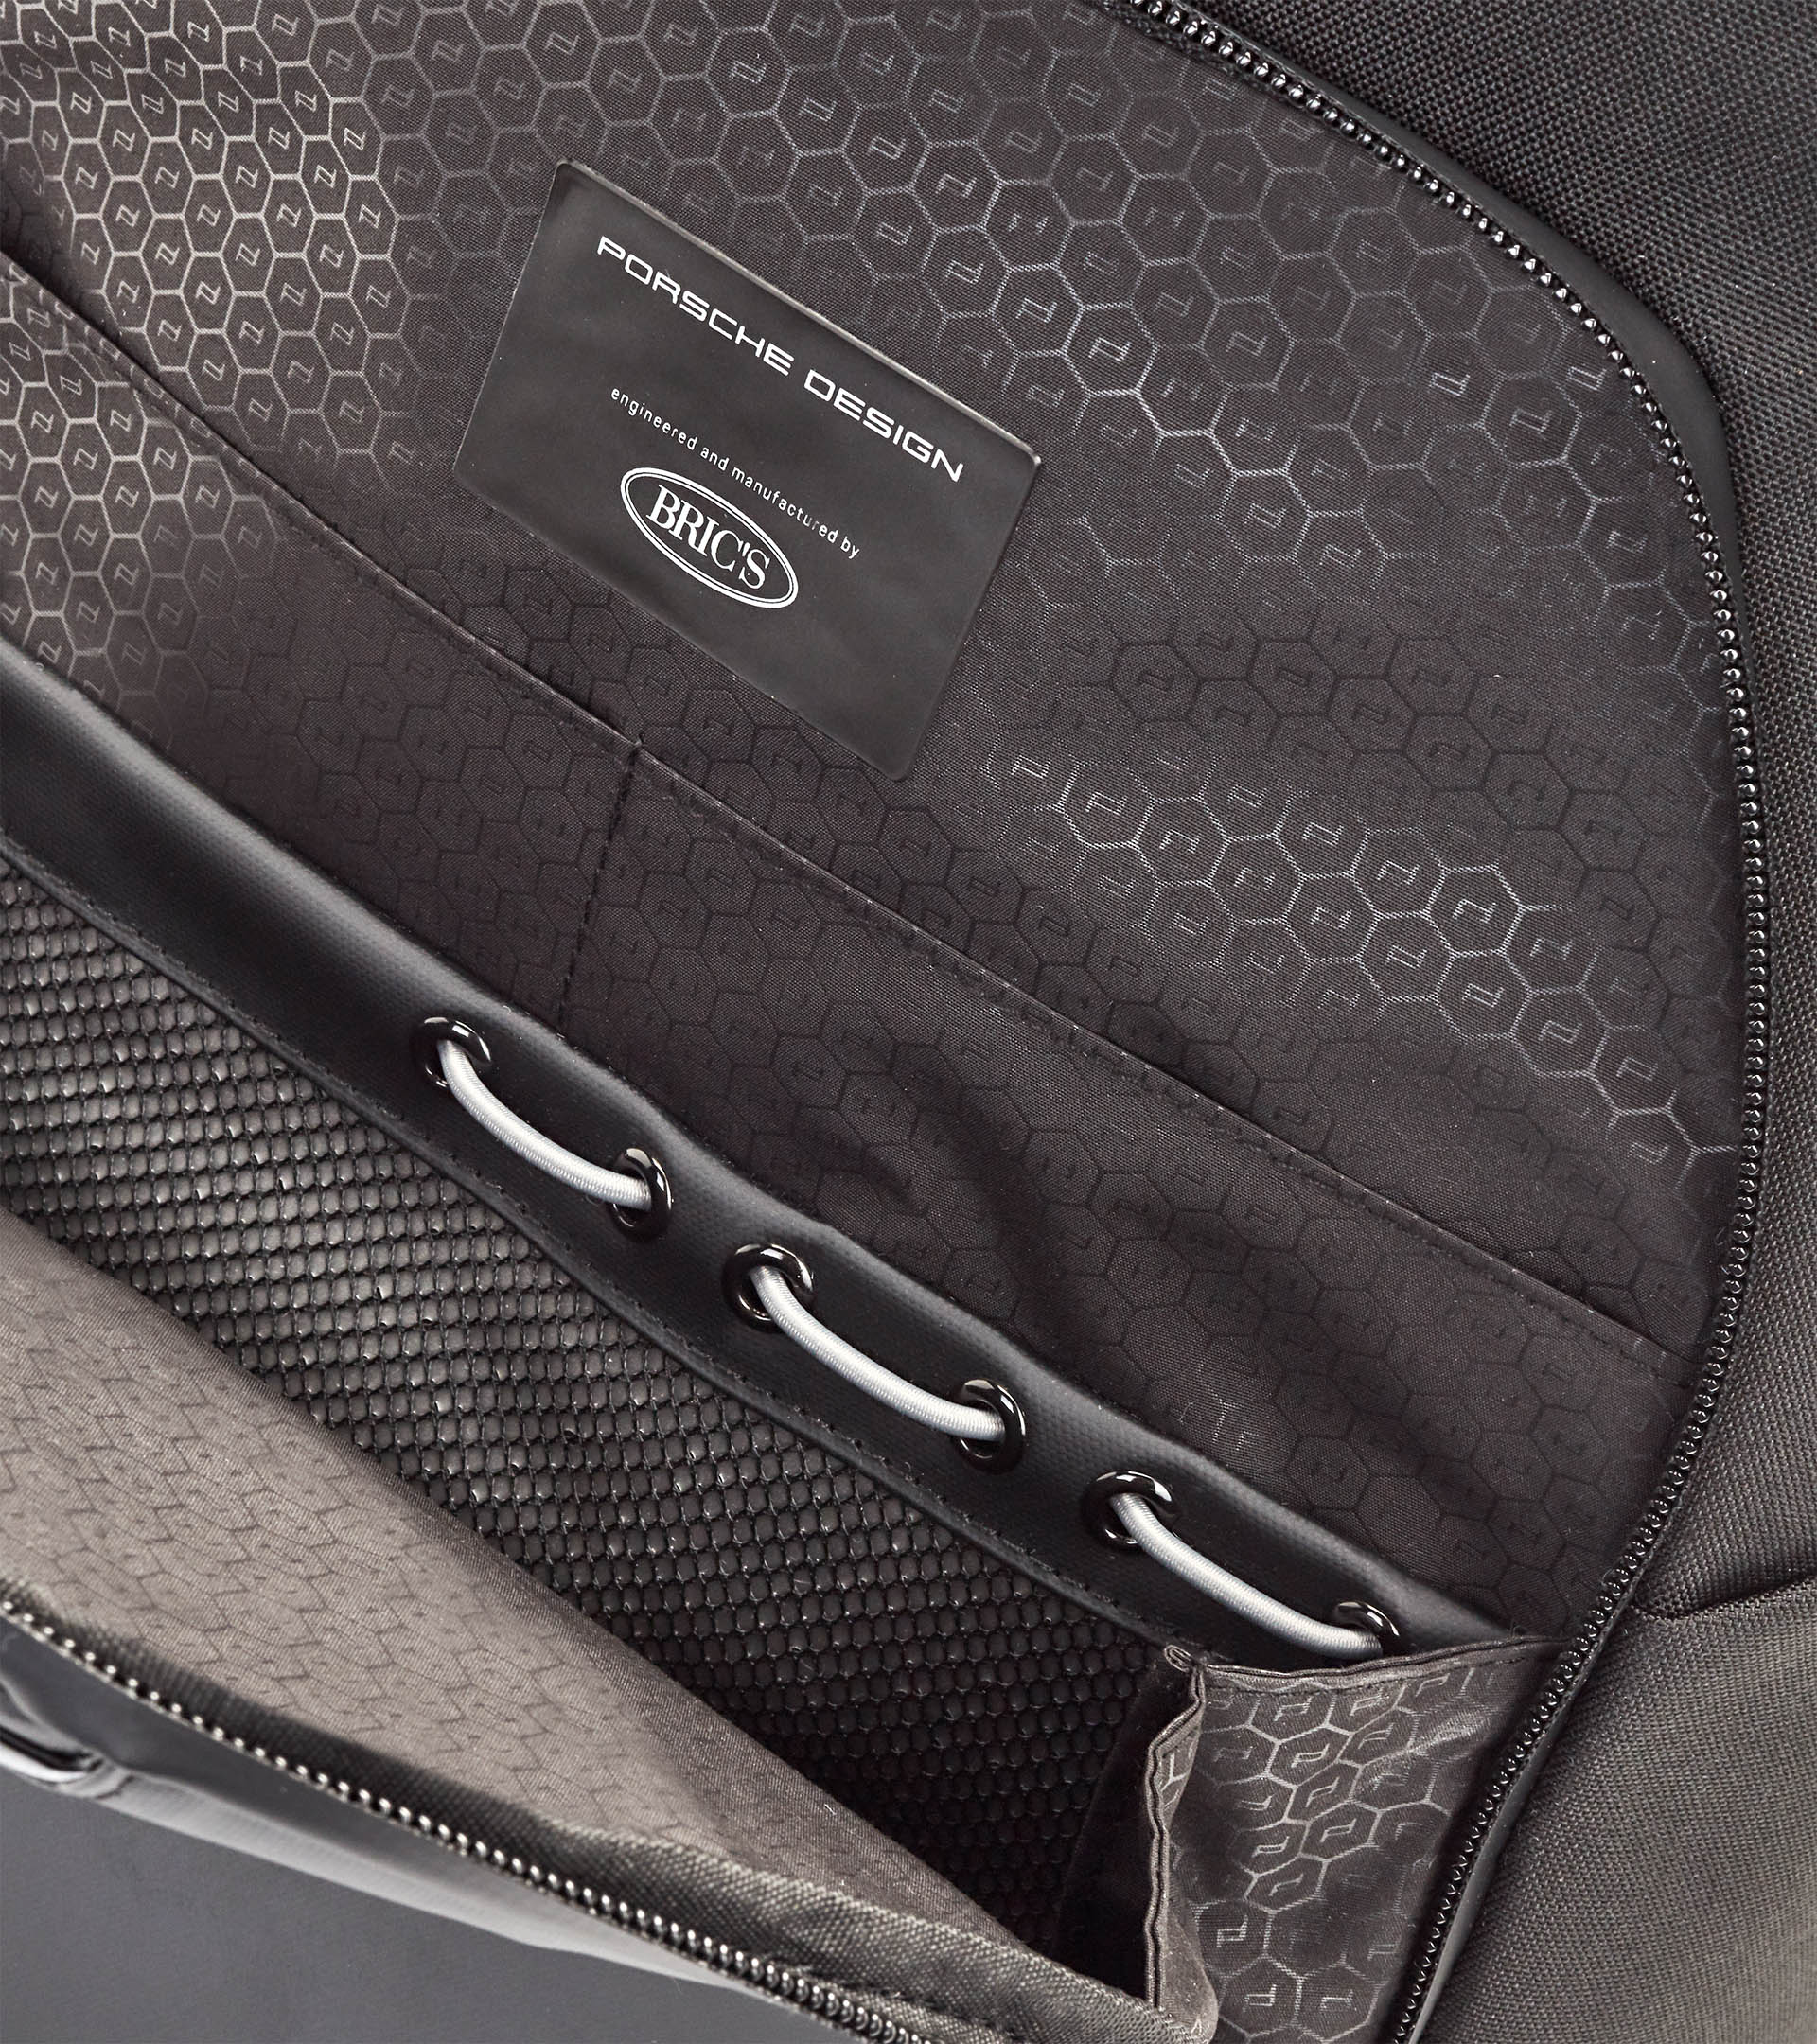 Urban Eco Backpack M1 - Business Backpack for Men | Porsche Design ...